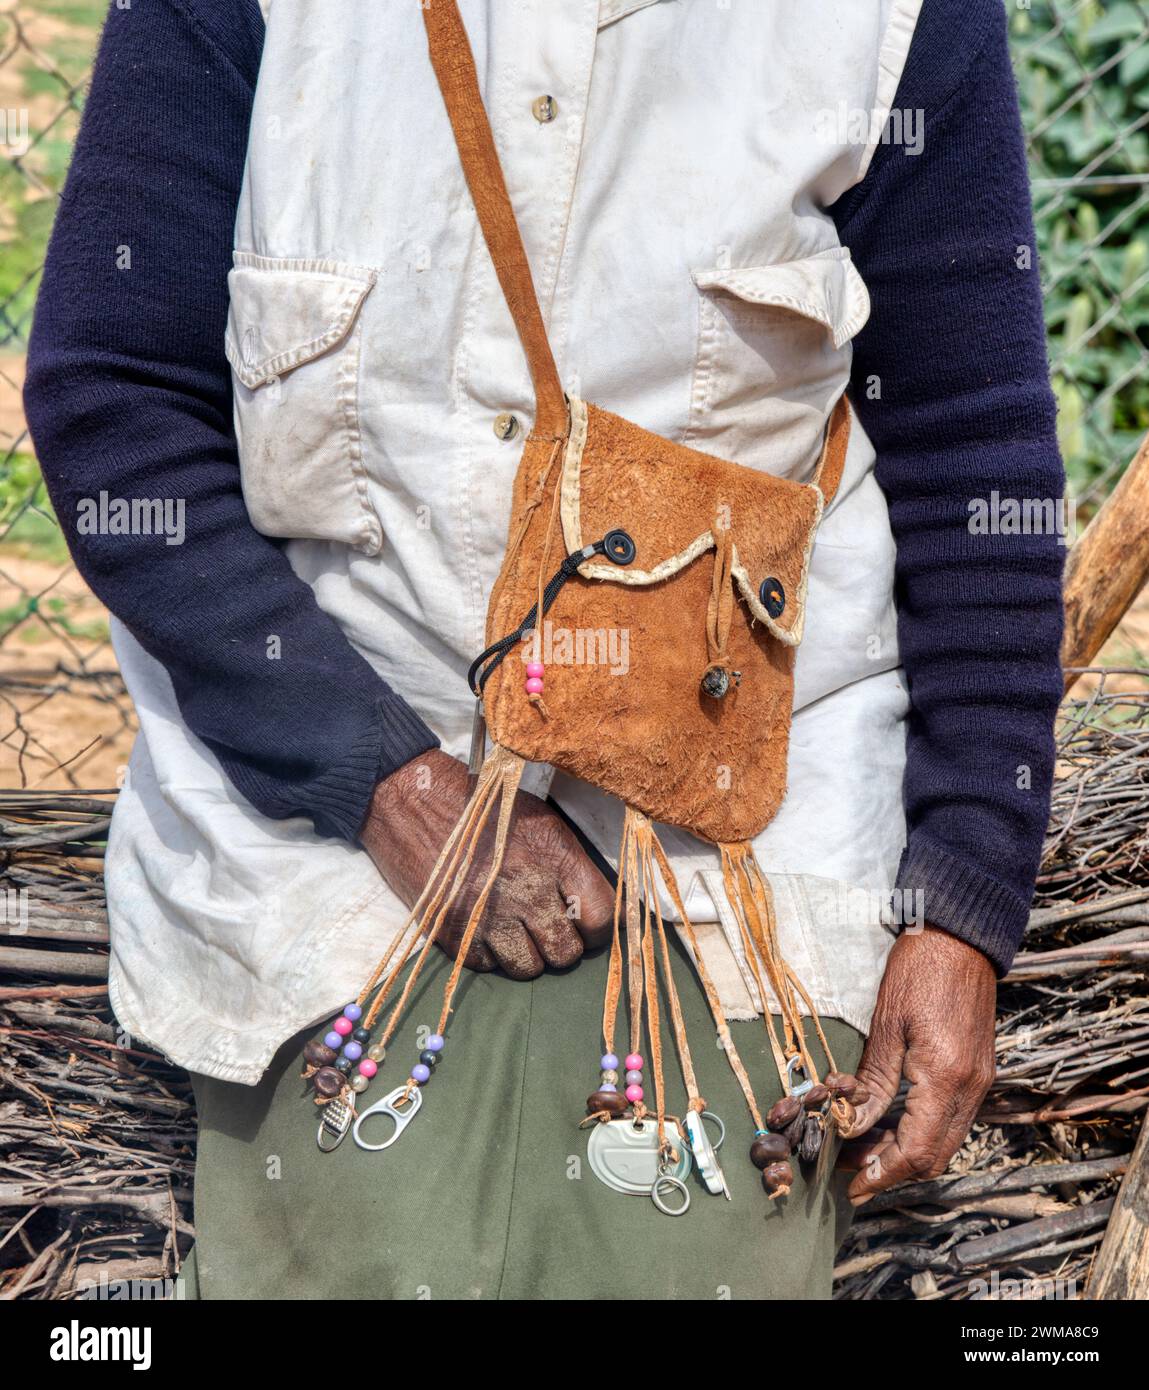 borsa in pelle tradizionale africana, donna africana del villaggio nel cortile, sud africa Foto Stock